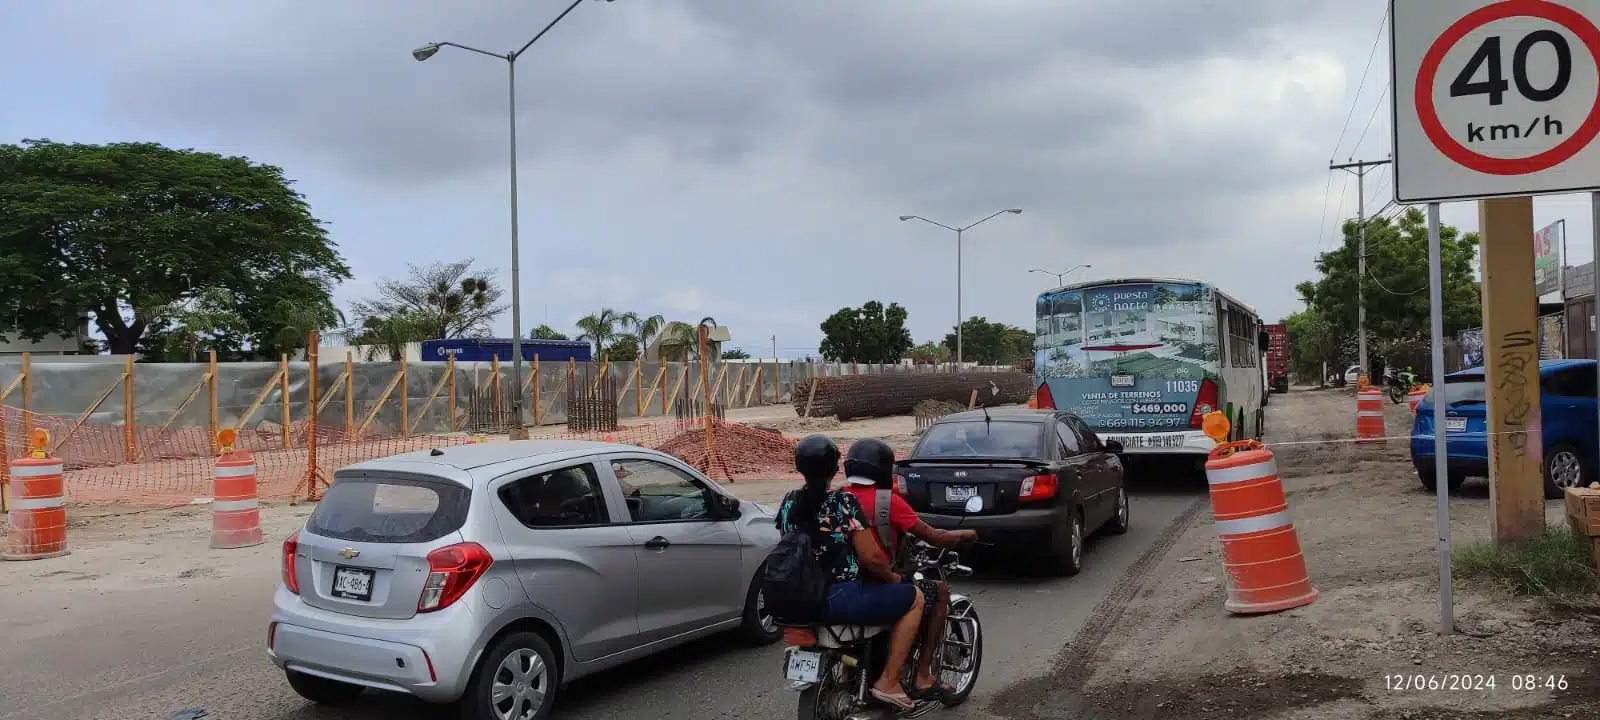 Tránsito Mazatlán pide a conductores evitar zona del puente en construcción